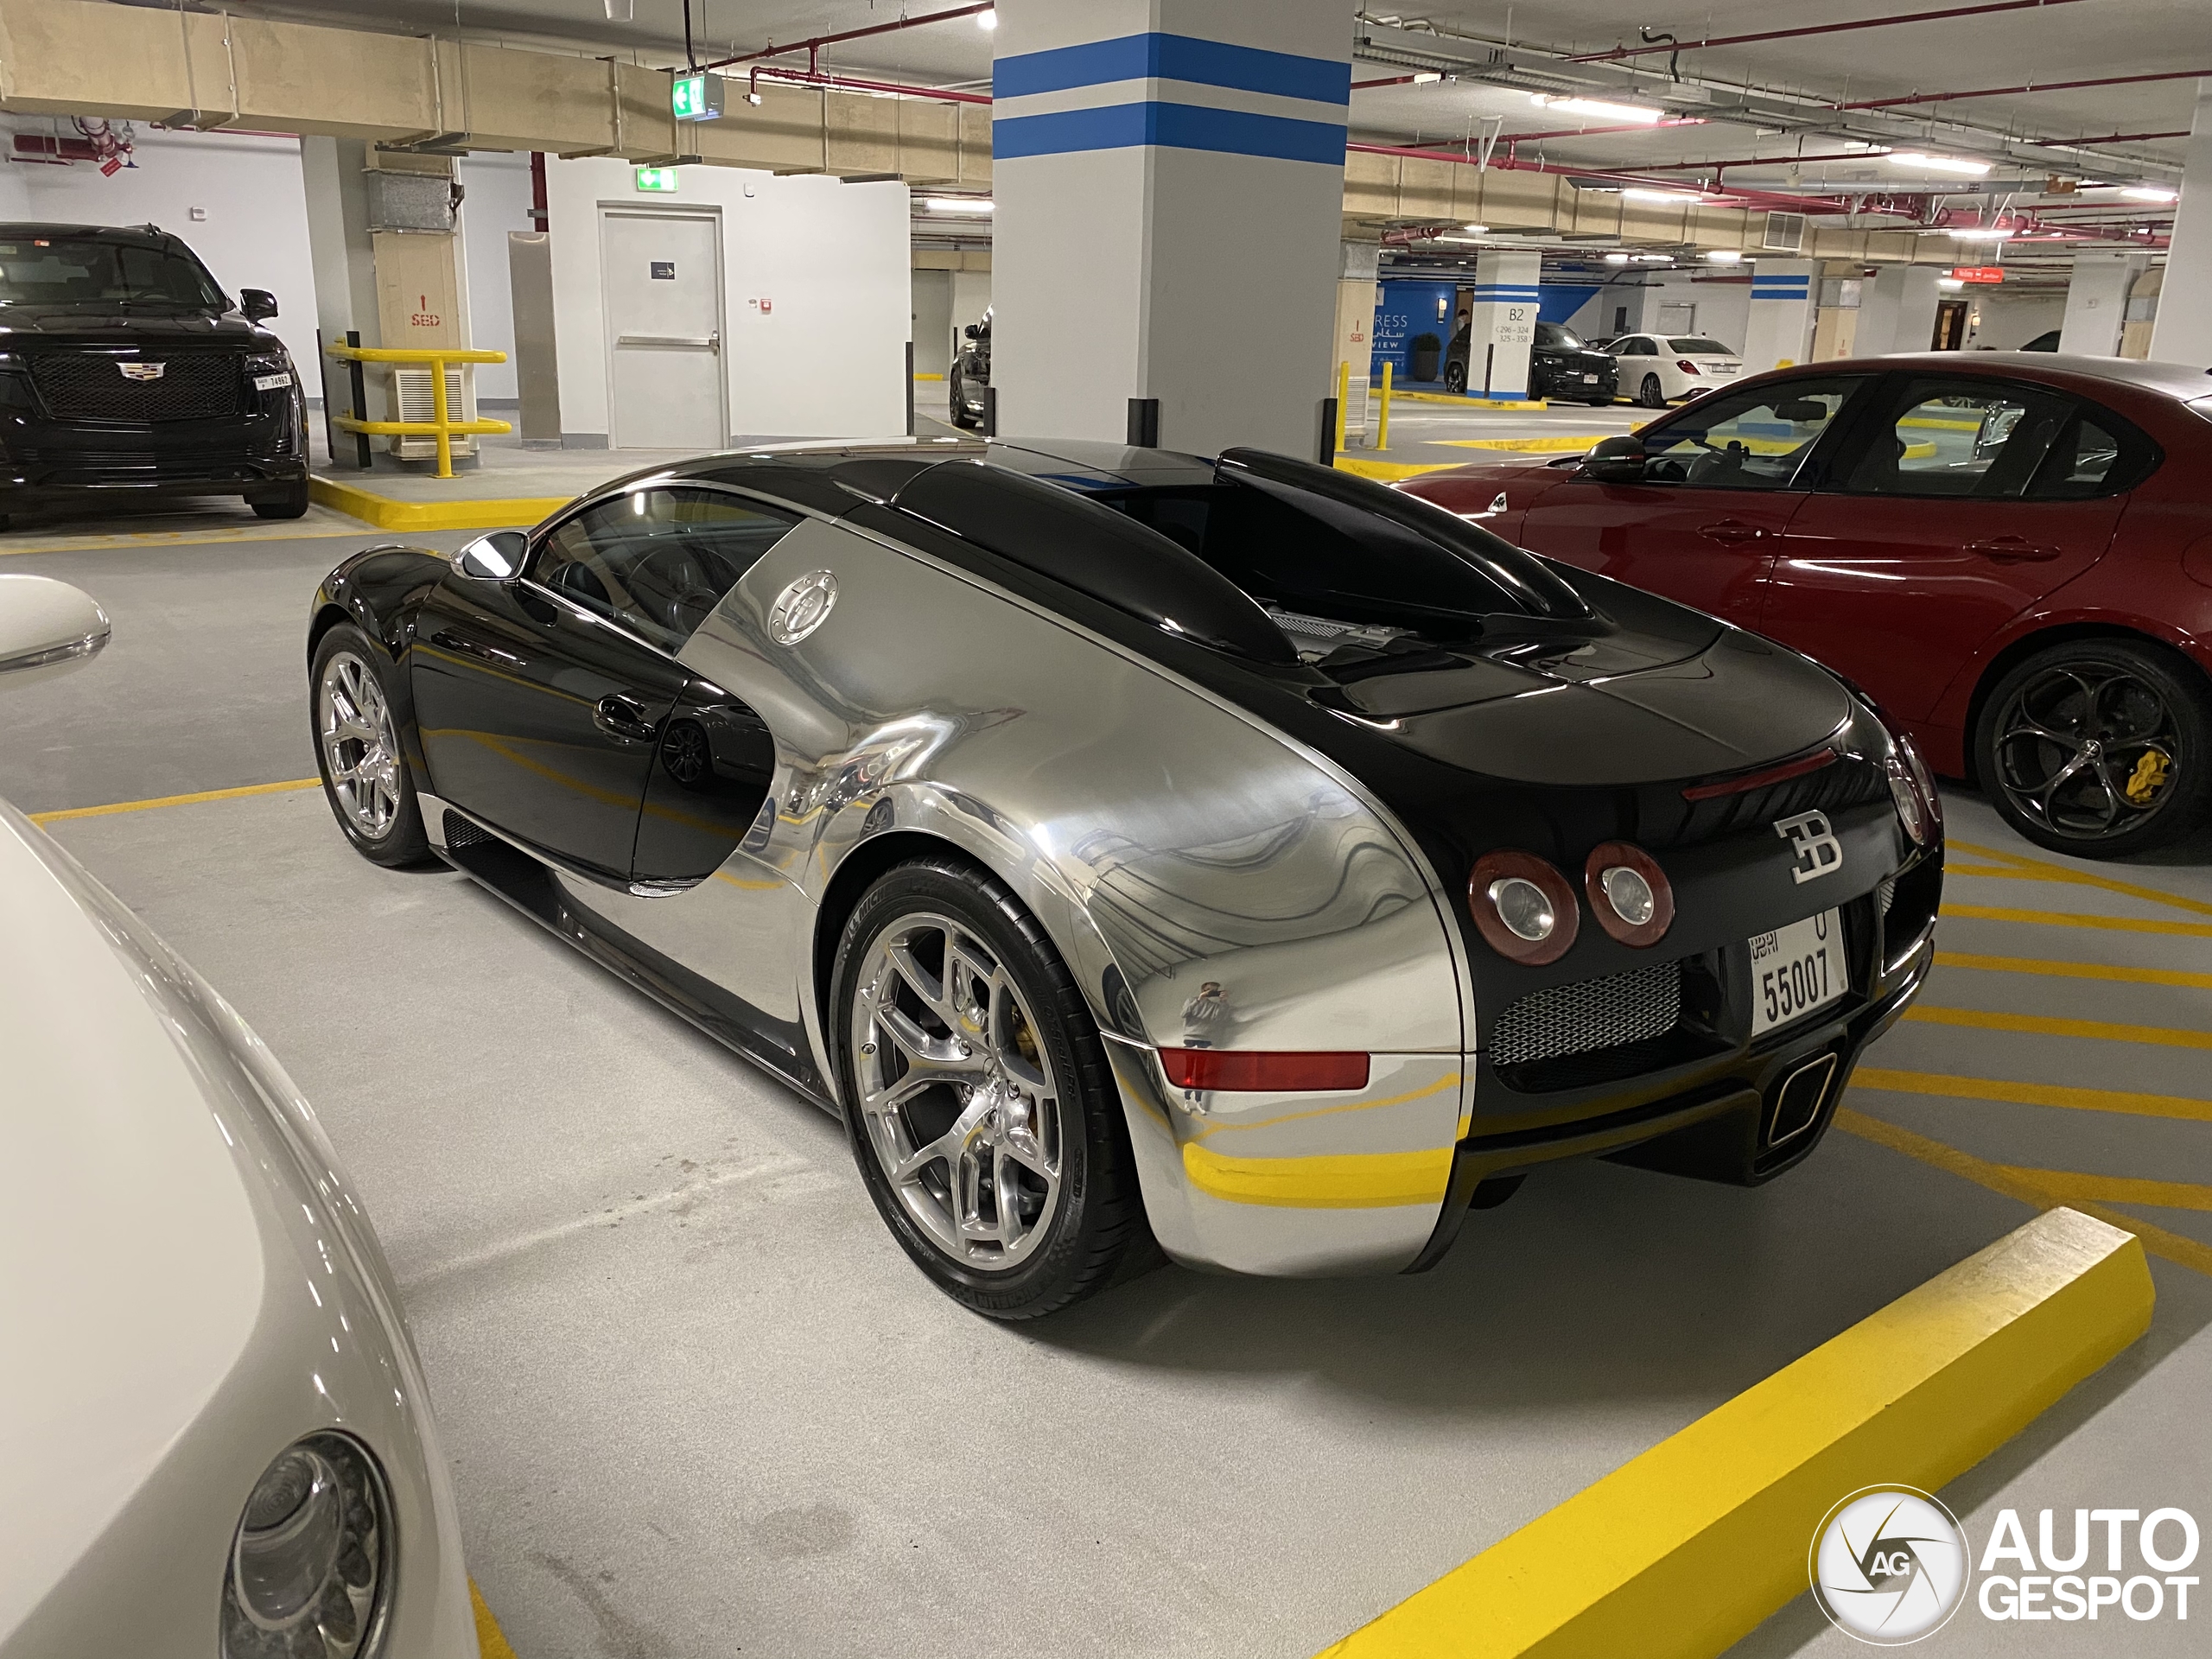 Bugatti had conquered chrome for itself